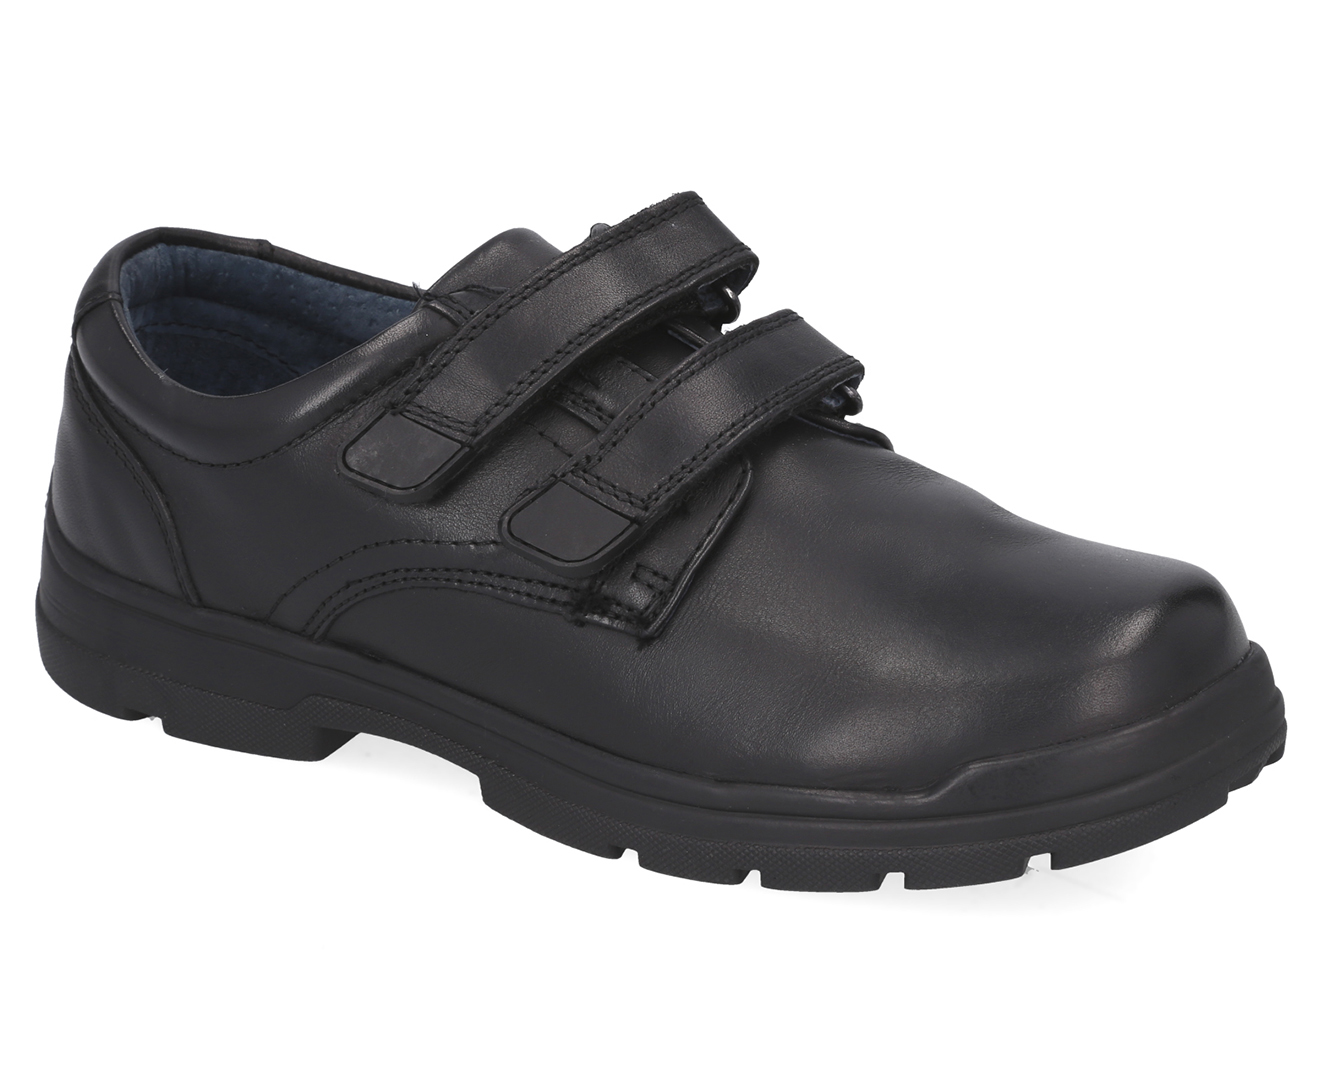 Clarks Girls' Mentor Wide Fit School Shoes - Black | Catch.com.au